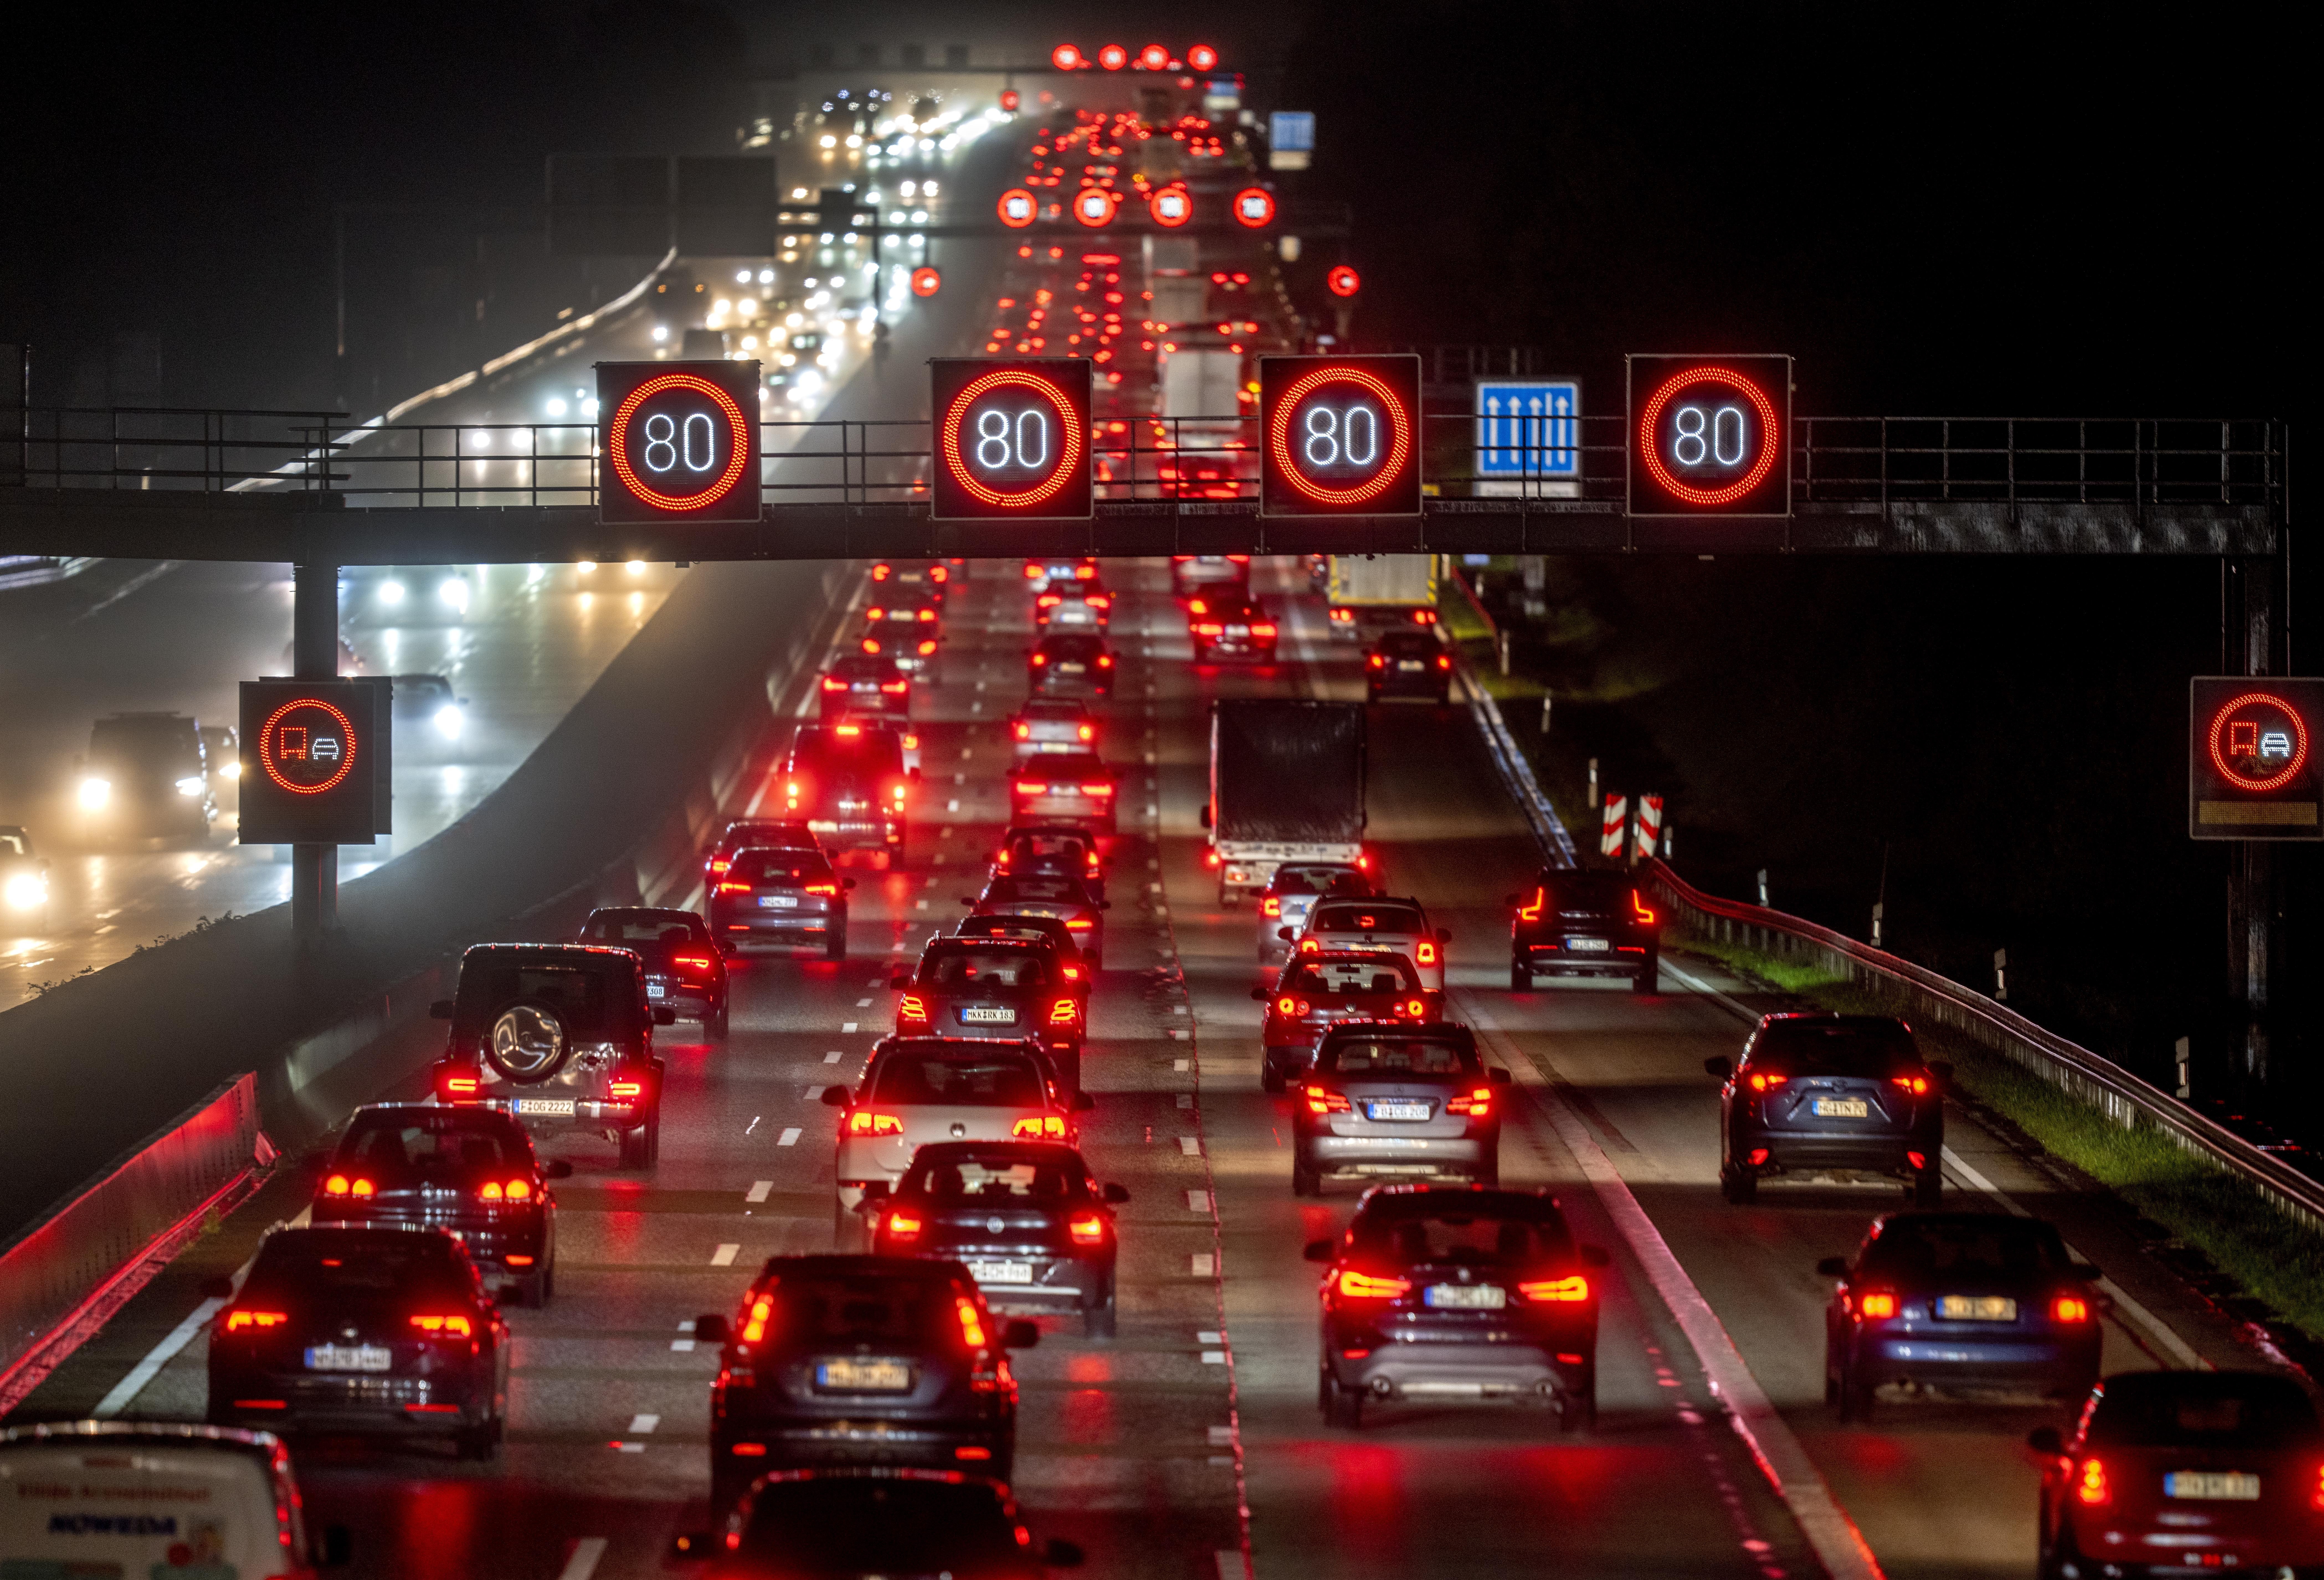 Germania s-a răzgândit în privinţa interzicerii maşinilor pe combustie: "Piaţa ar trebui să decidă ce doresc consumatorii, nu politicienii"